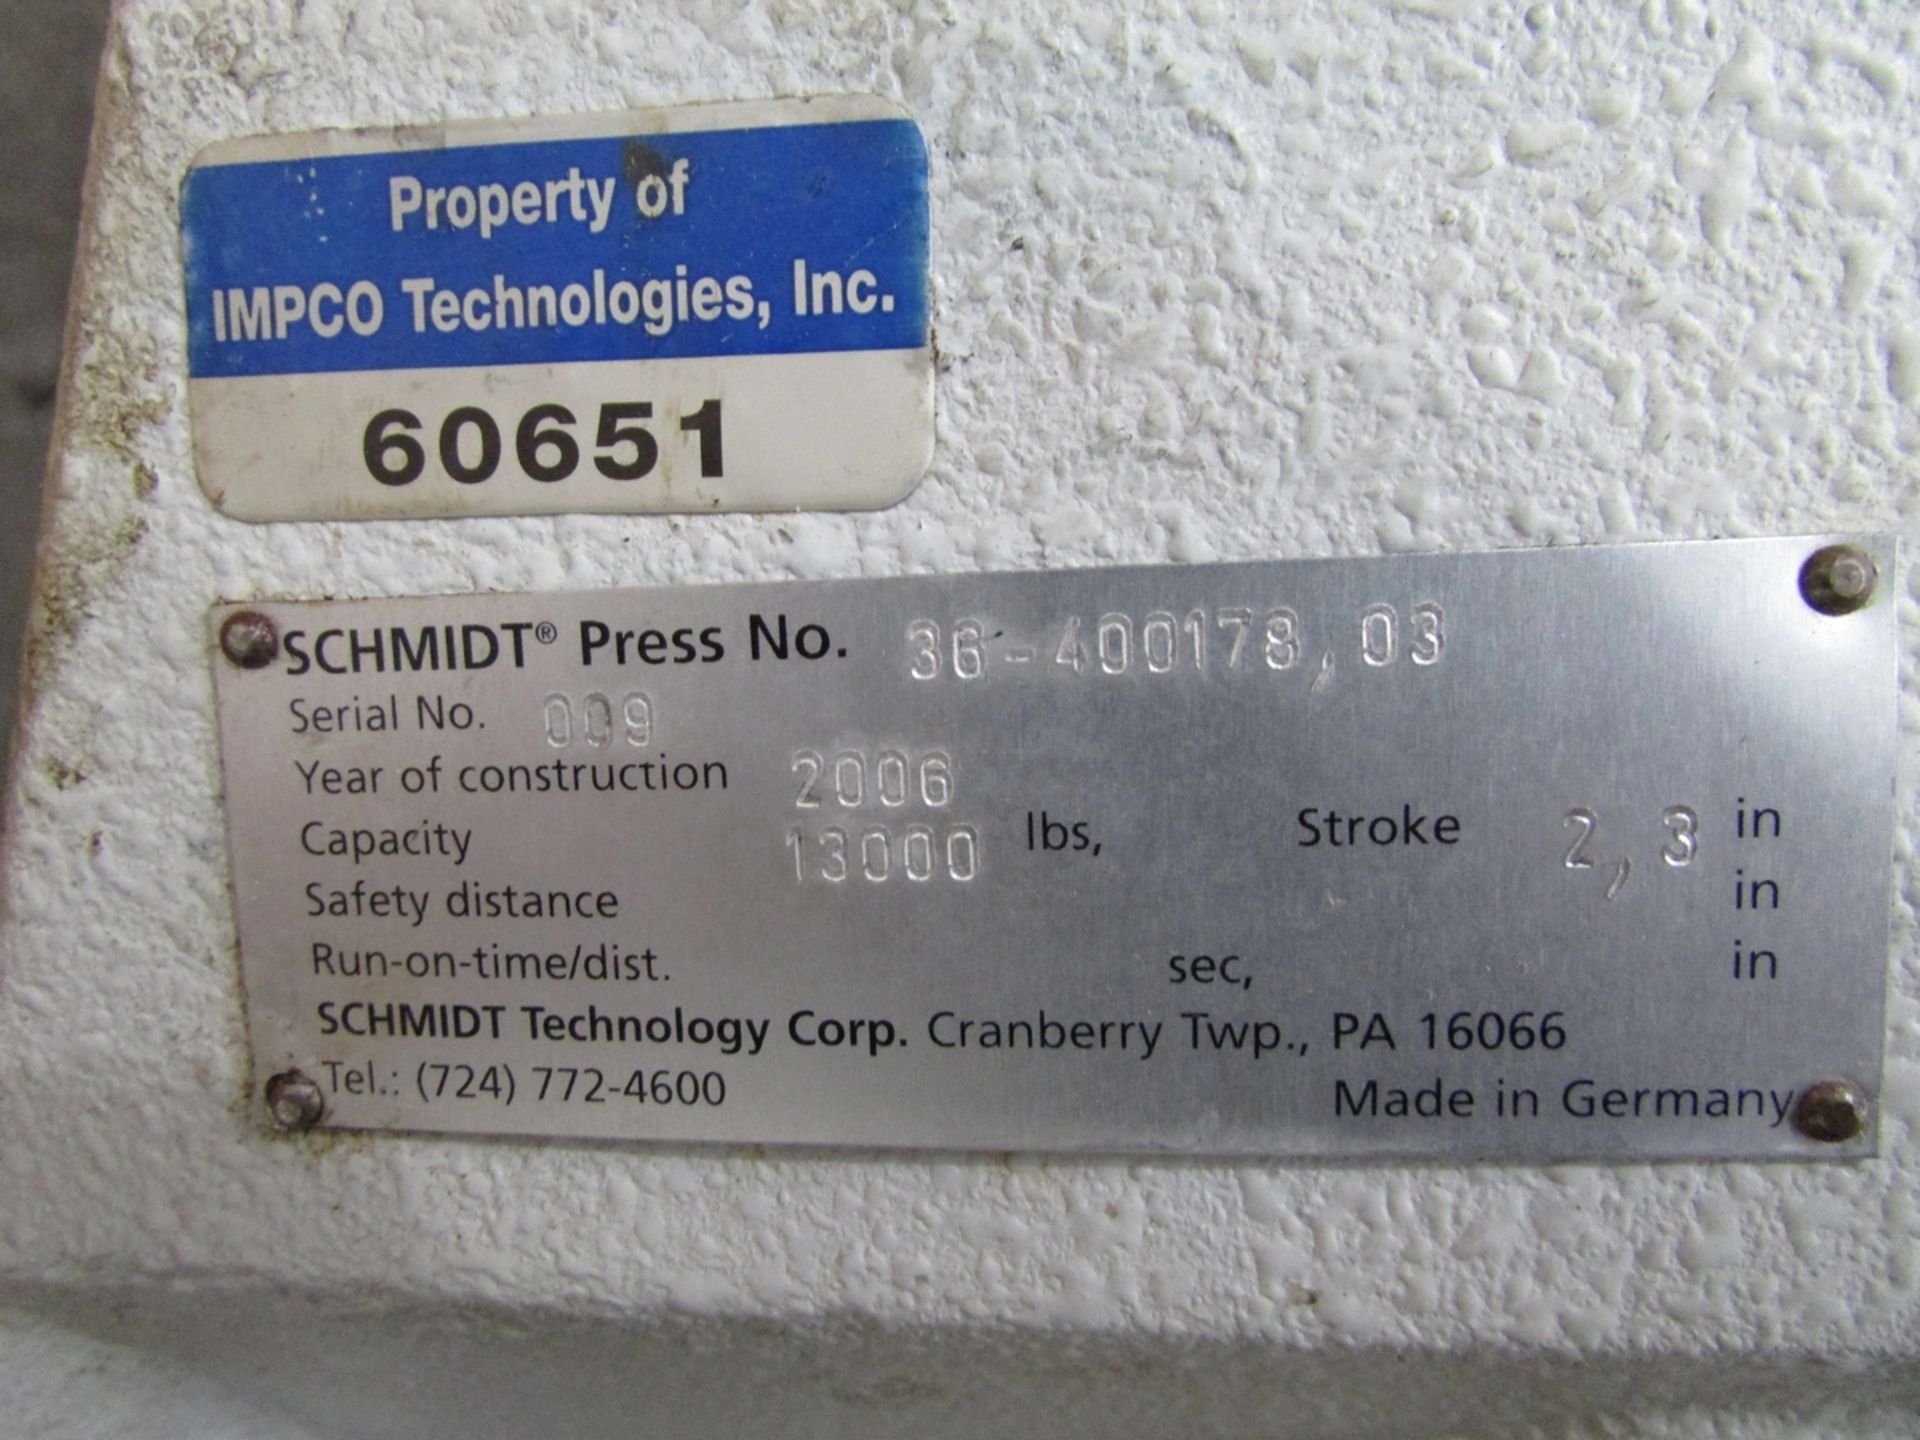 Schmidt 36-400178,03 13,000 Lb. Pneumatic Toggle Press Head (2006) - Image 15 of 16